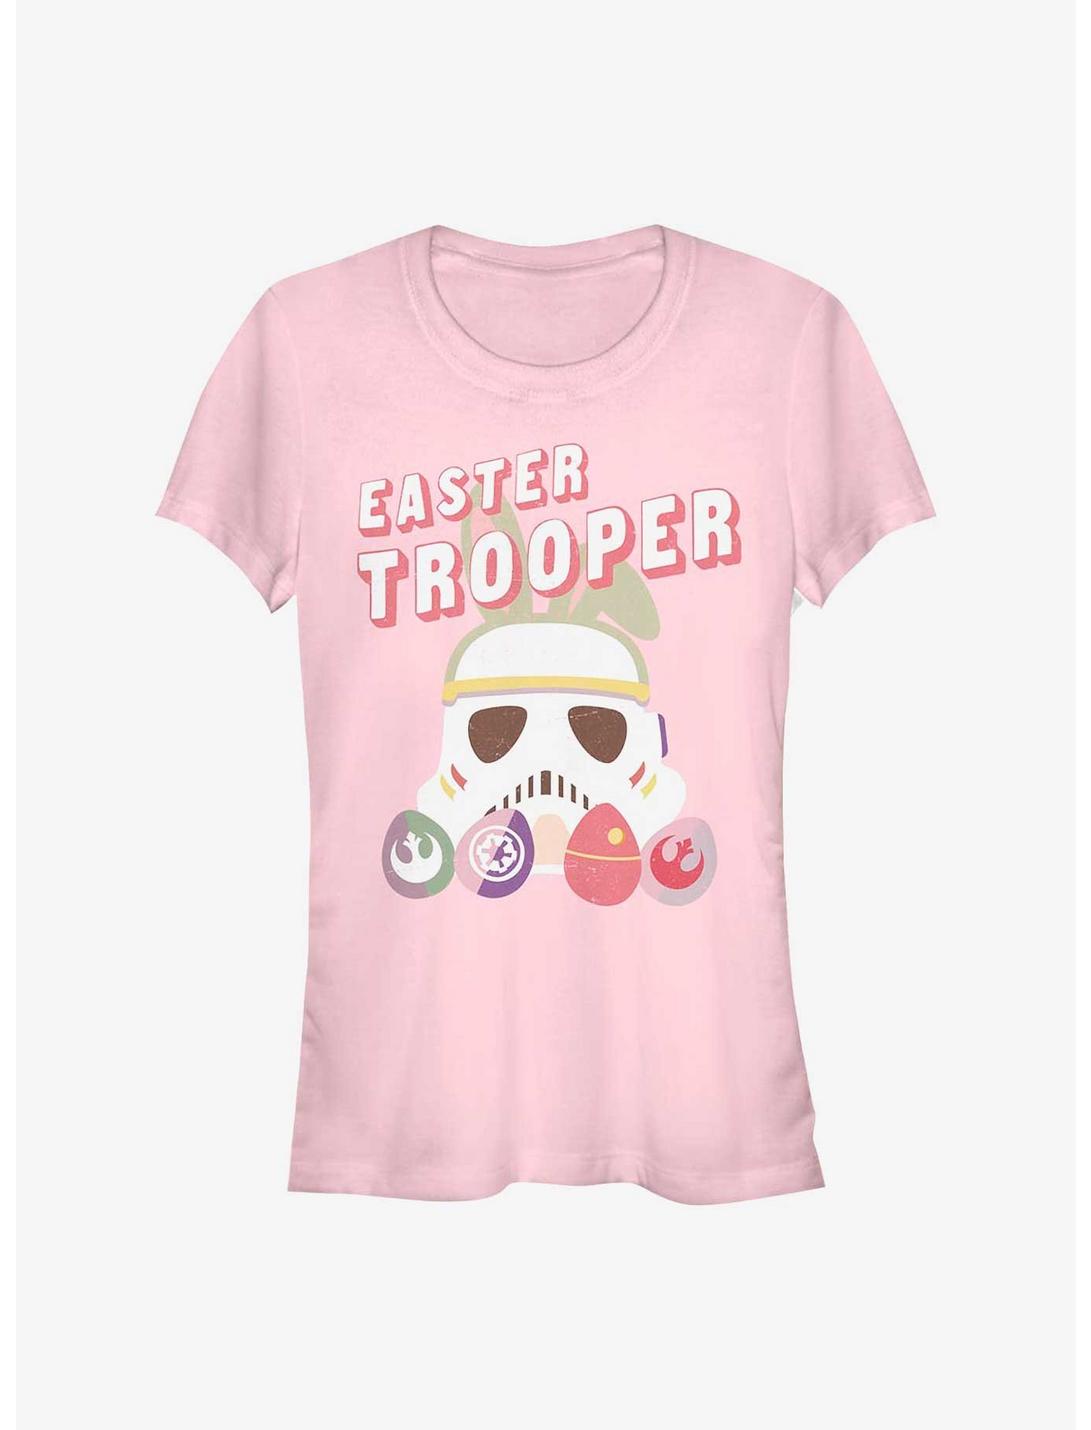 Star Wars Easter Trooper Girls T-Shirt, LIGHT PINK, hi-res